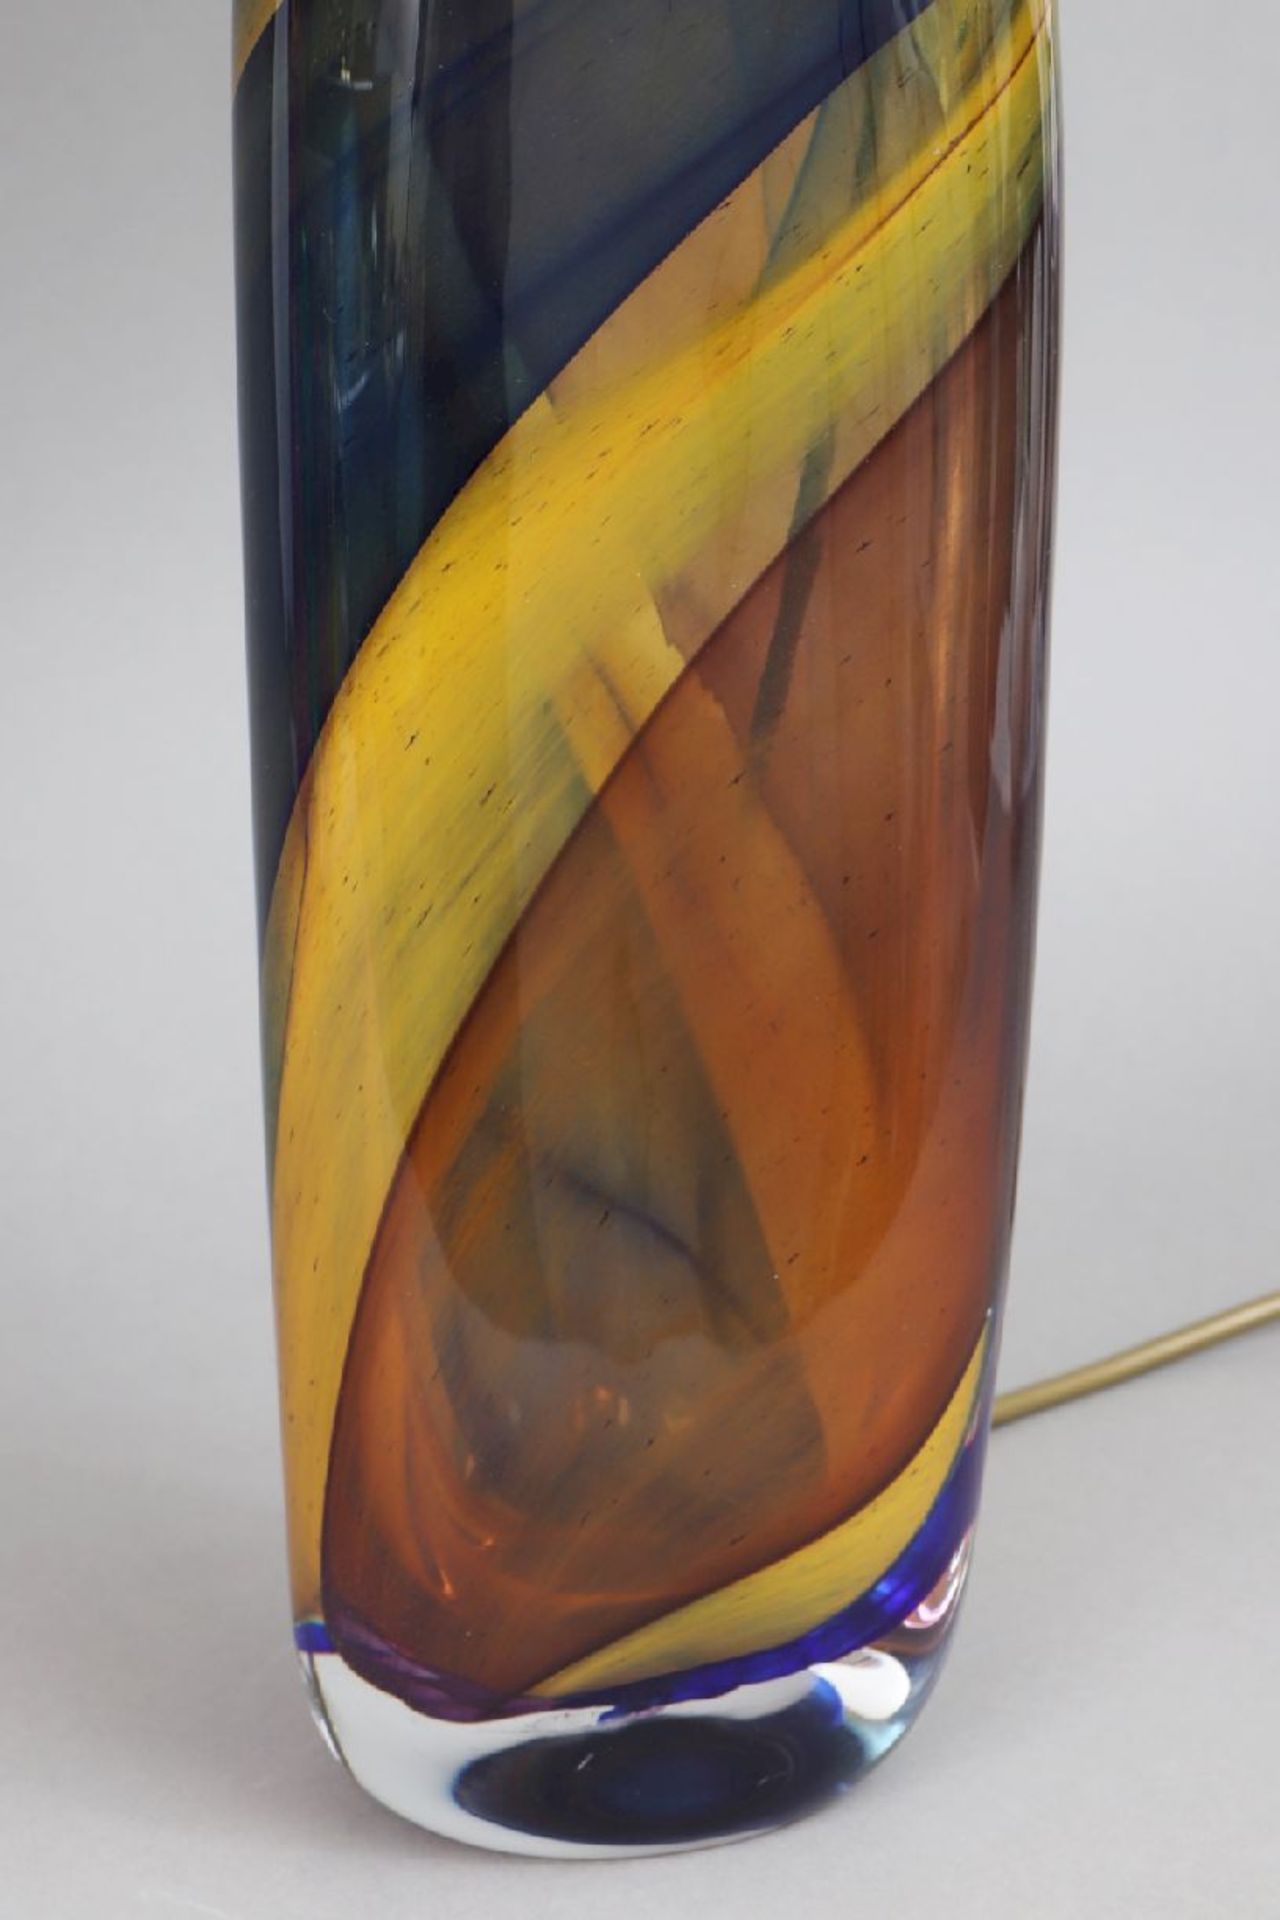 TischlampeGlas-Fuß, spindelförmiger Korpus mit rot-blau-gelben, spiralförmigen Streifen- - Image 3 of 3